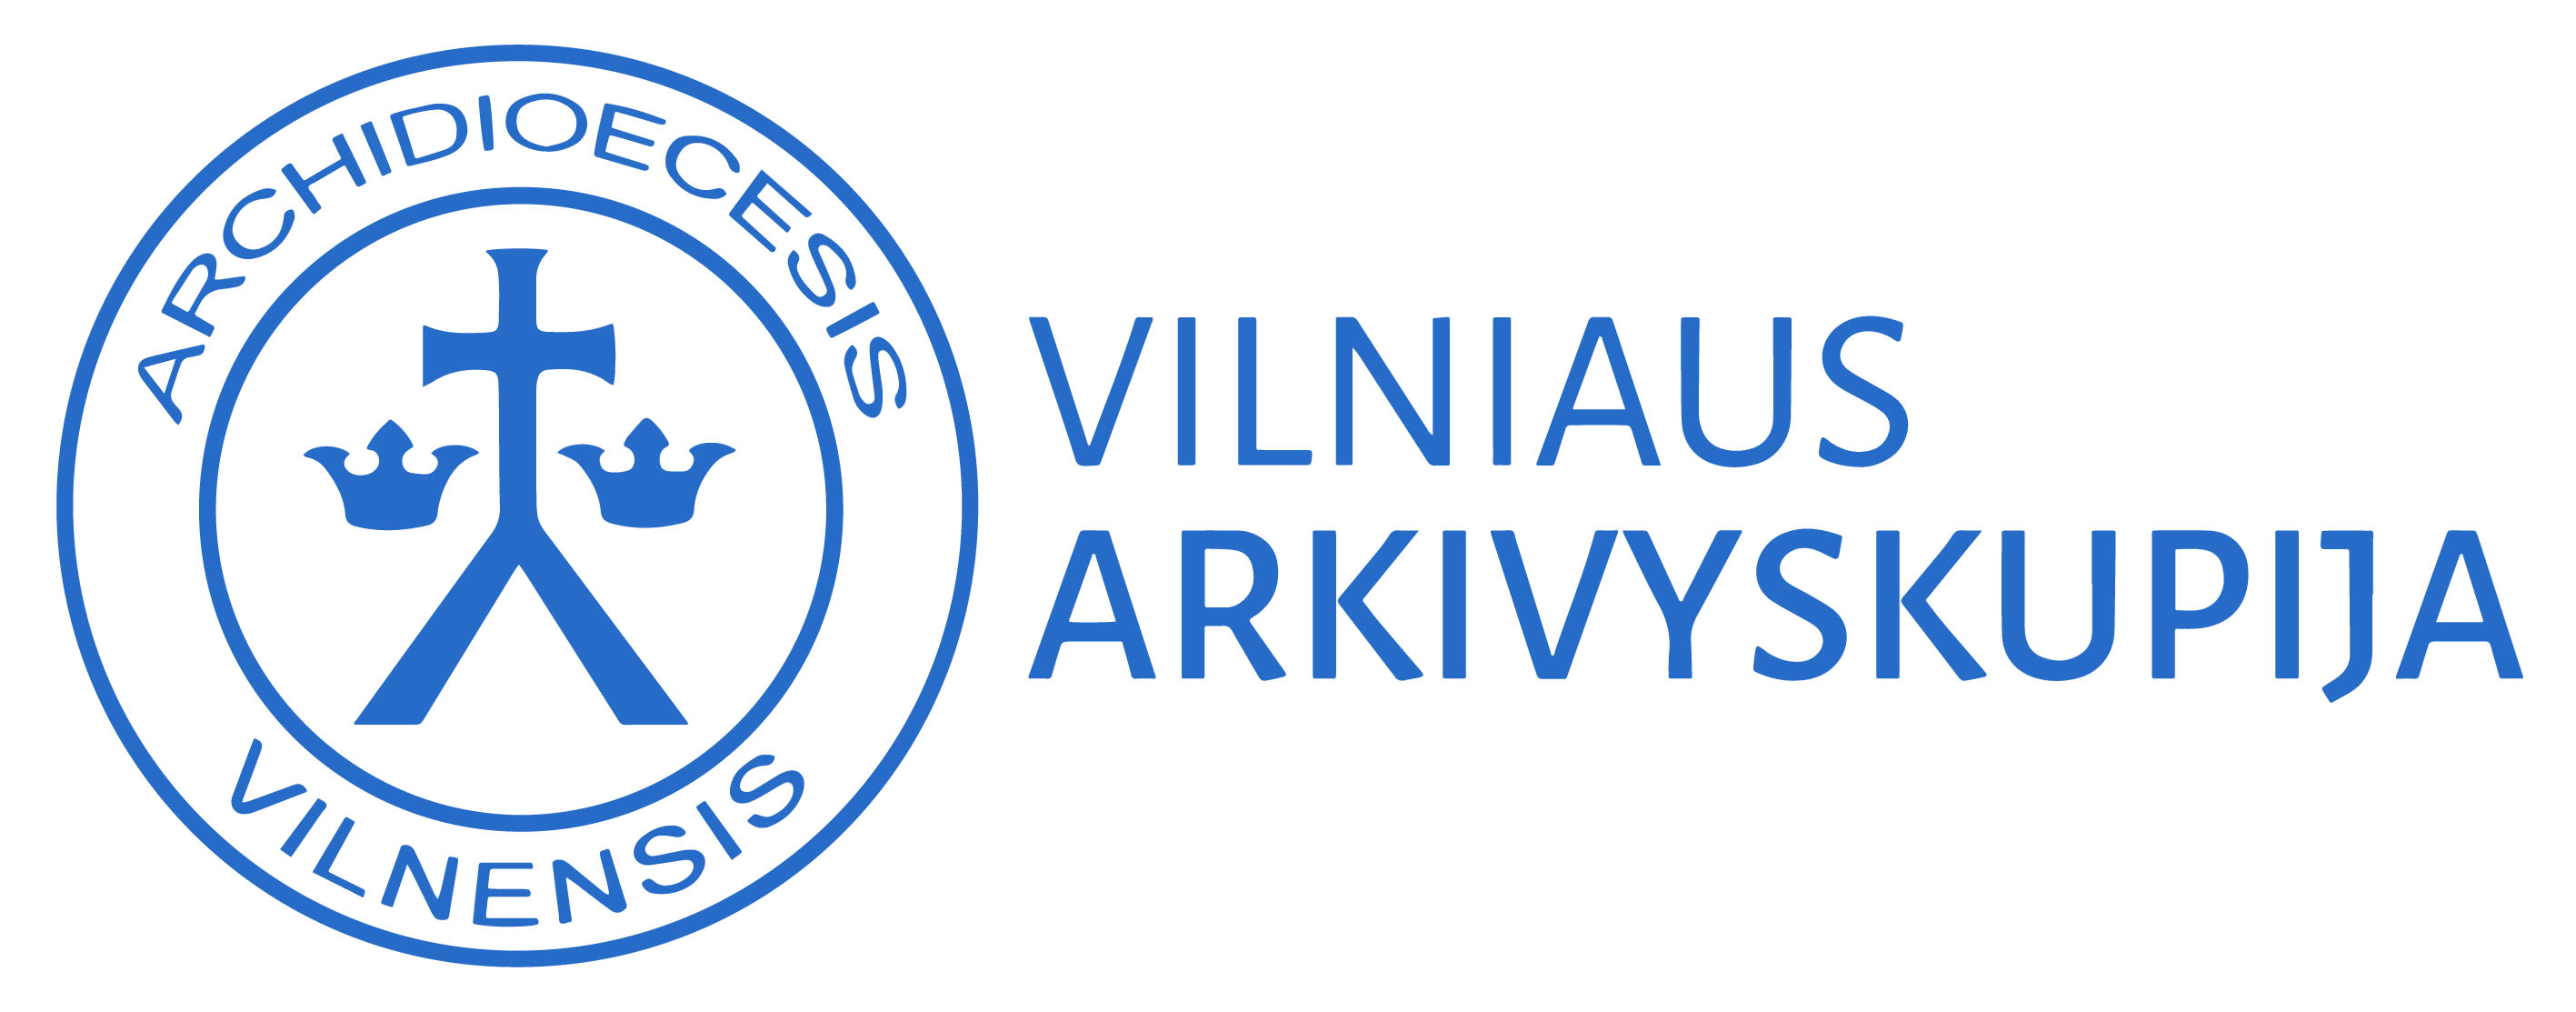 Vilniaus Akivyskupija